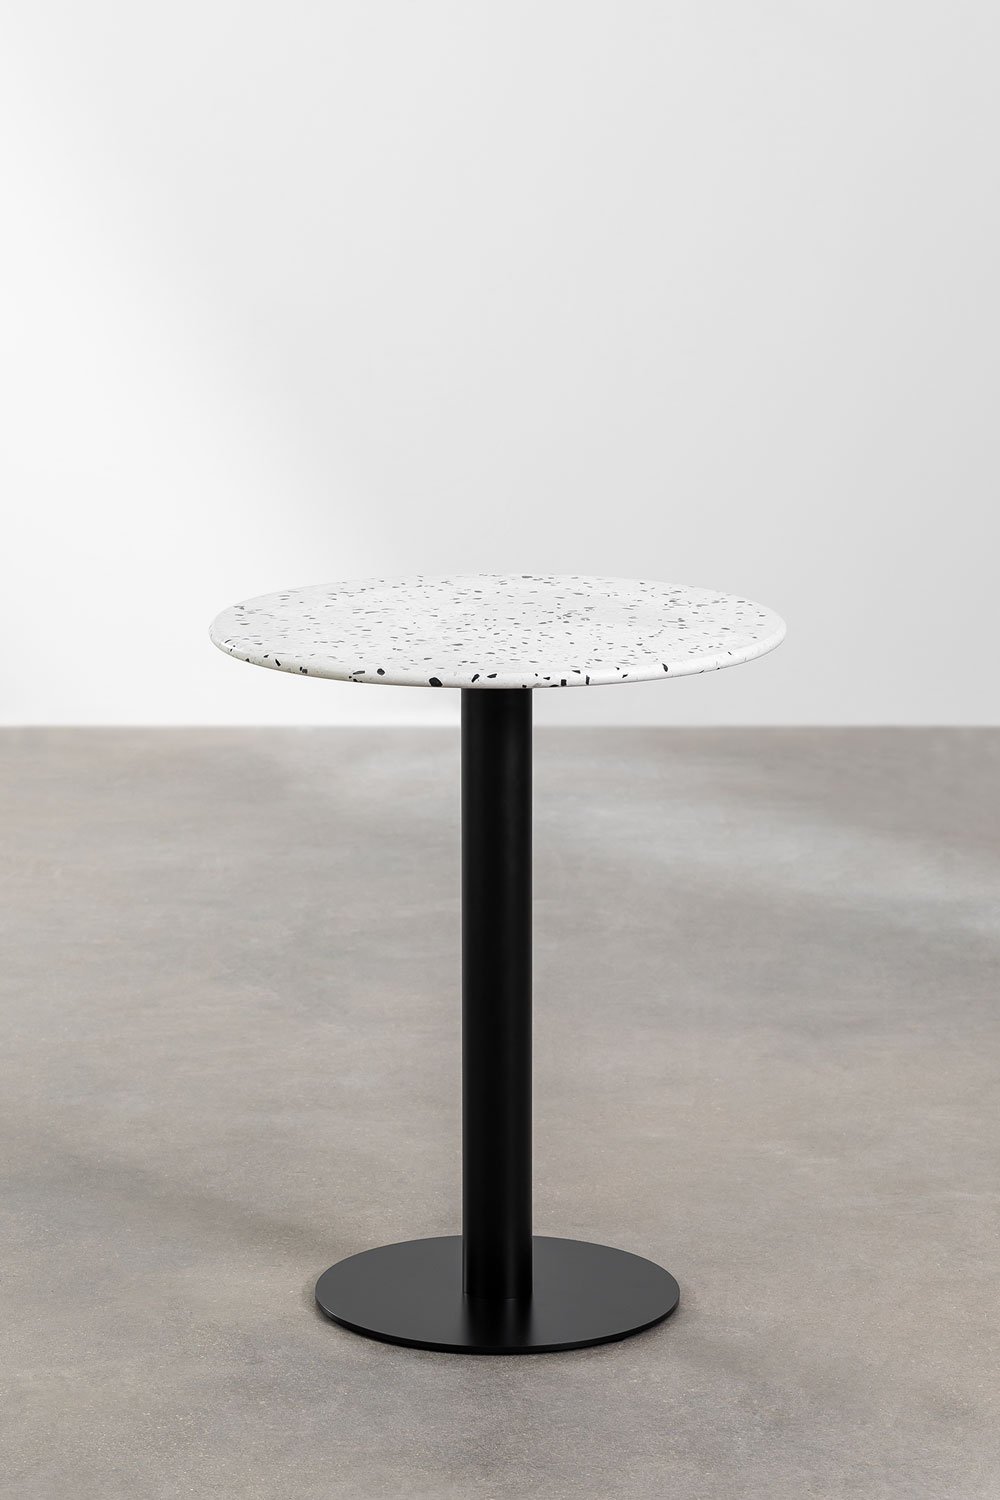 Okrągły stolik barowy z lastryko (Ø60 cm) Dolce, obrazek w galerii 1